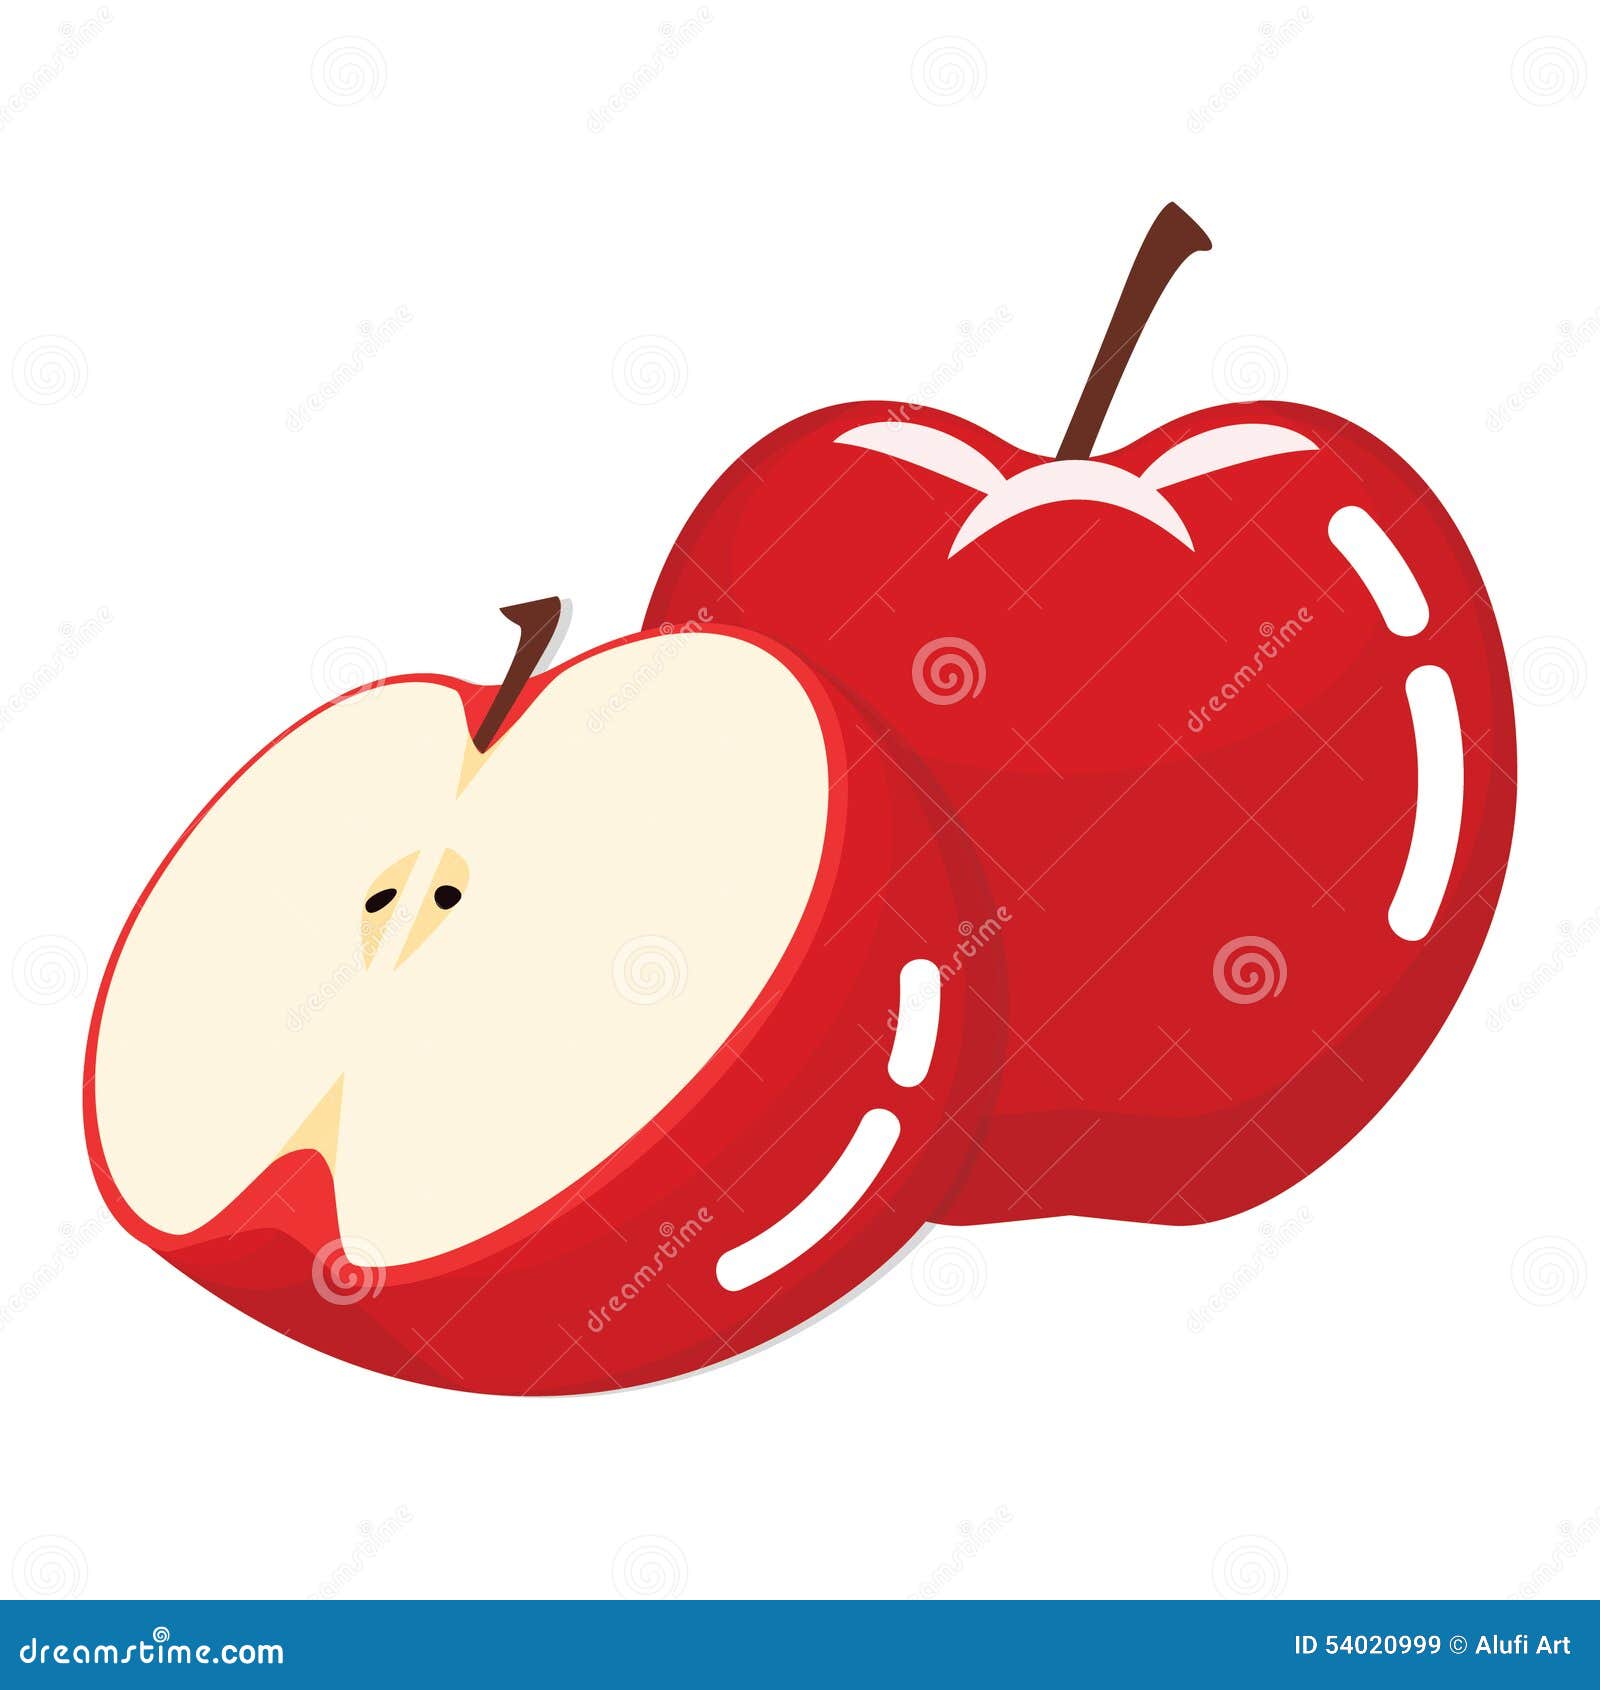 Fresh Red Apple Fruit stock vector. Illustration of apple - 54020999